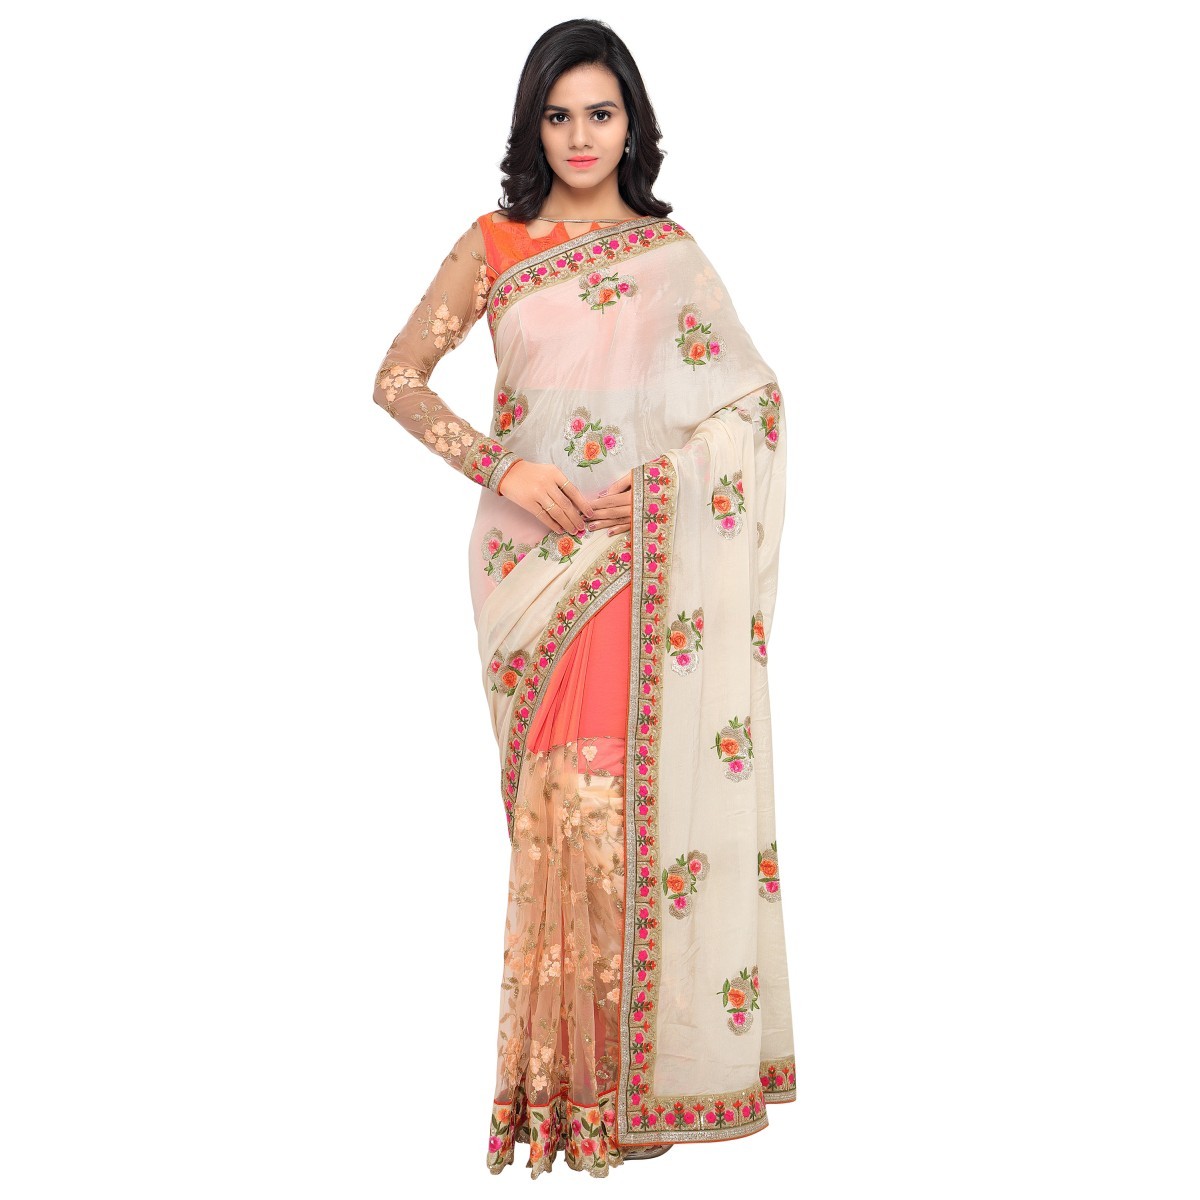 saris-1648625337.jpeg